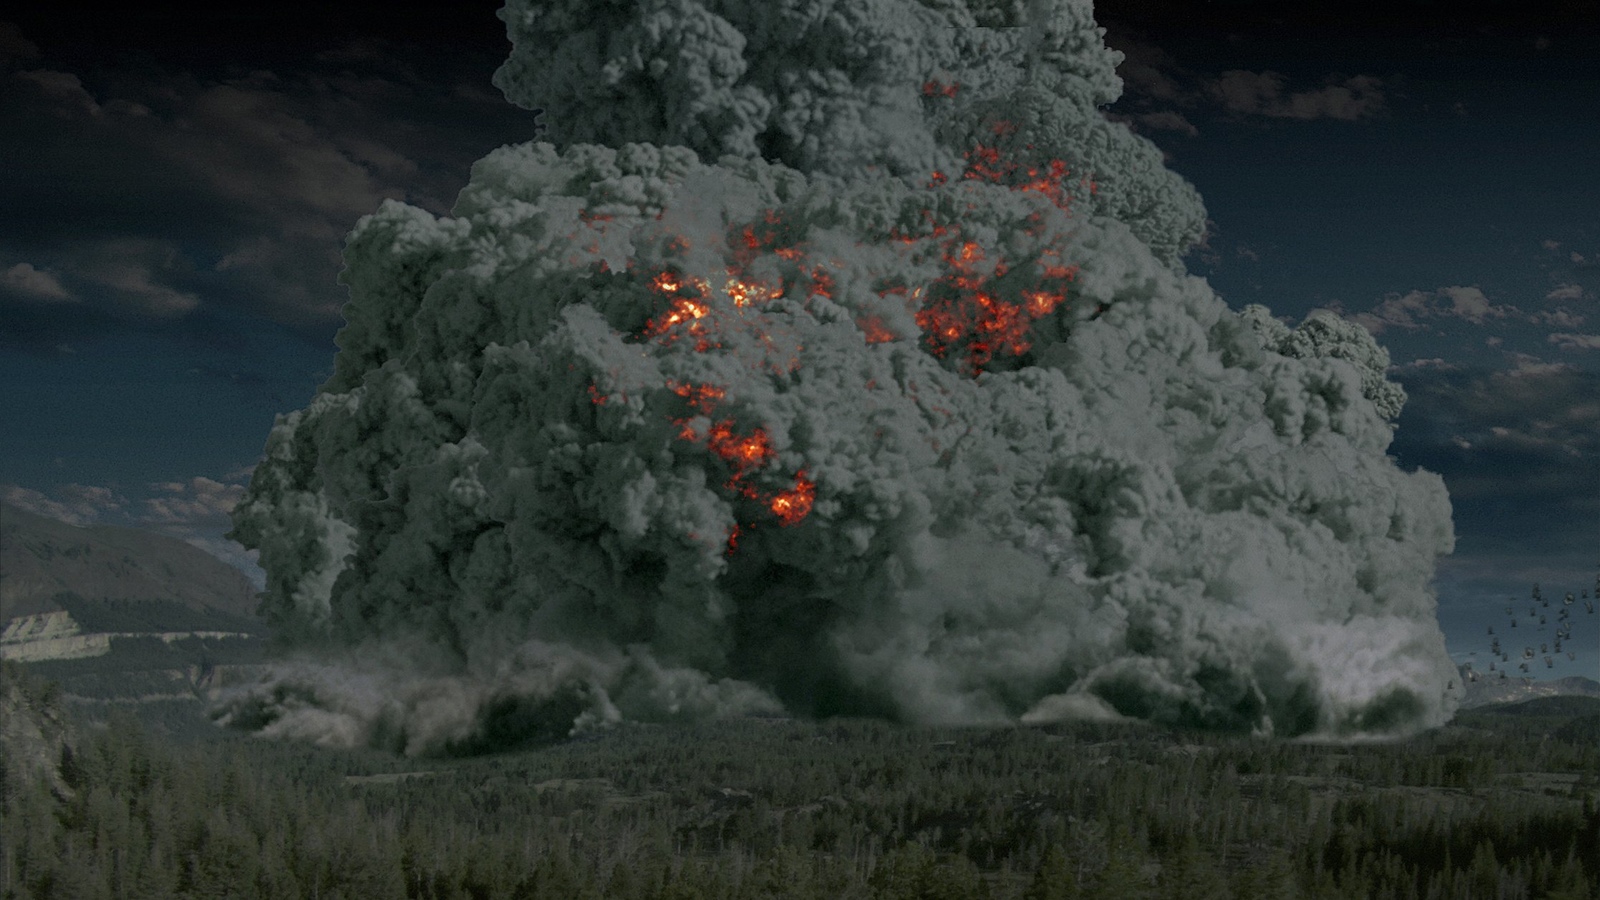 Έρχεται μεγάλη απειλή για την Ανθρωπότητα: Οι επιστήμονες βλέπουν έκρηξη «υπερηφαιστείου» και αφανισμό! (βίντεο)